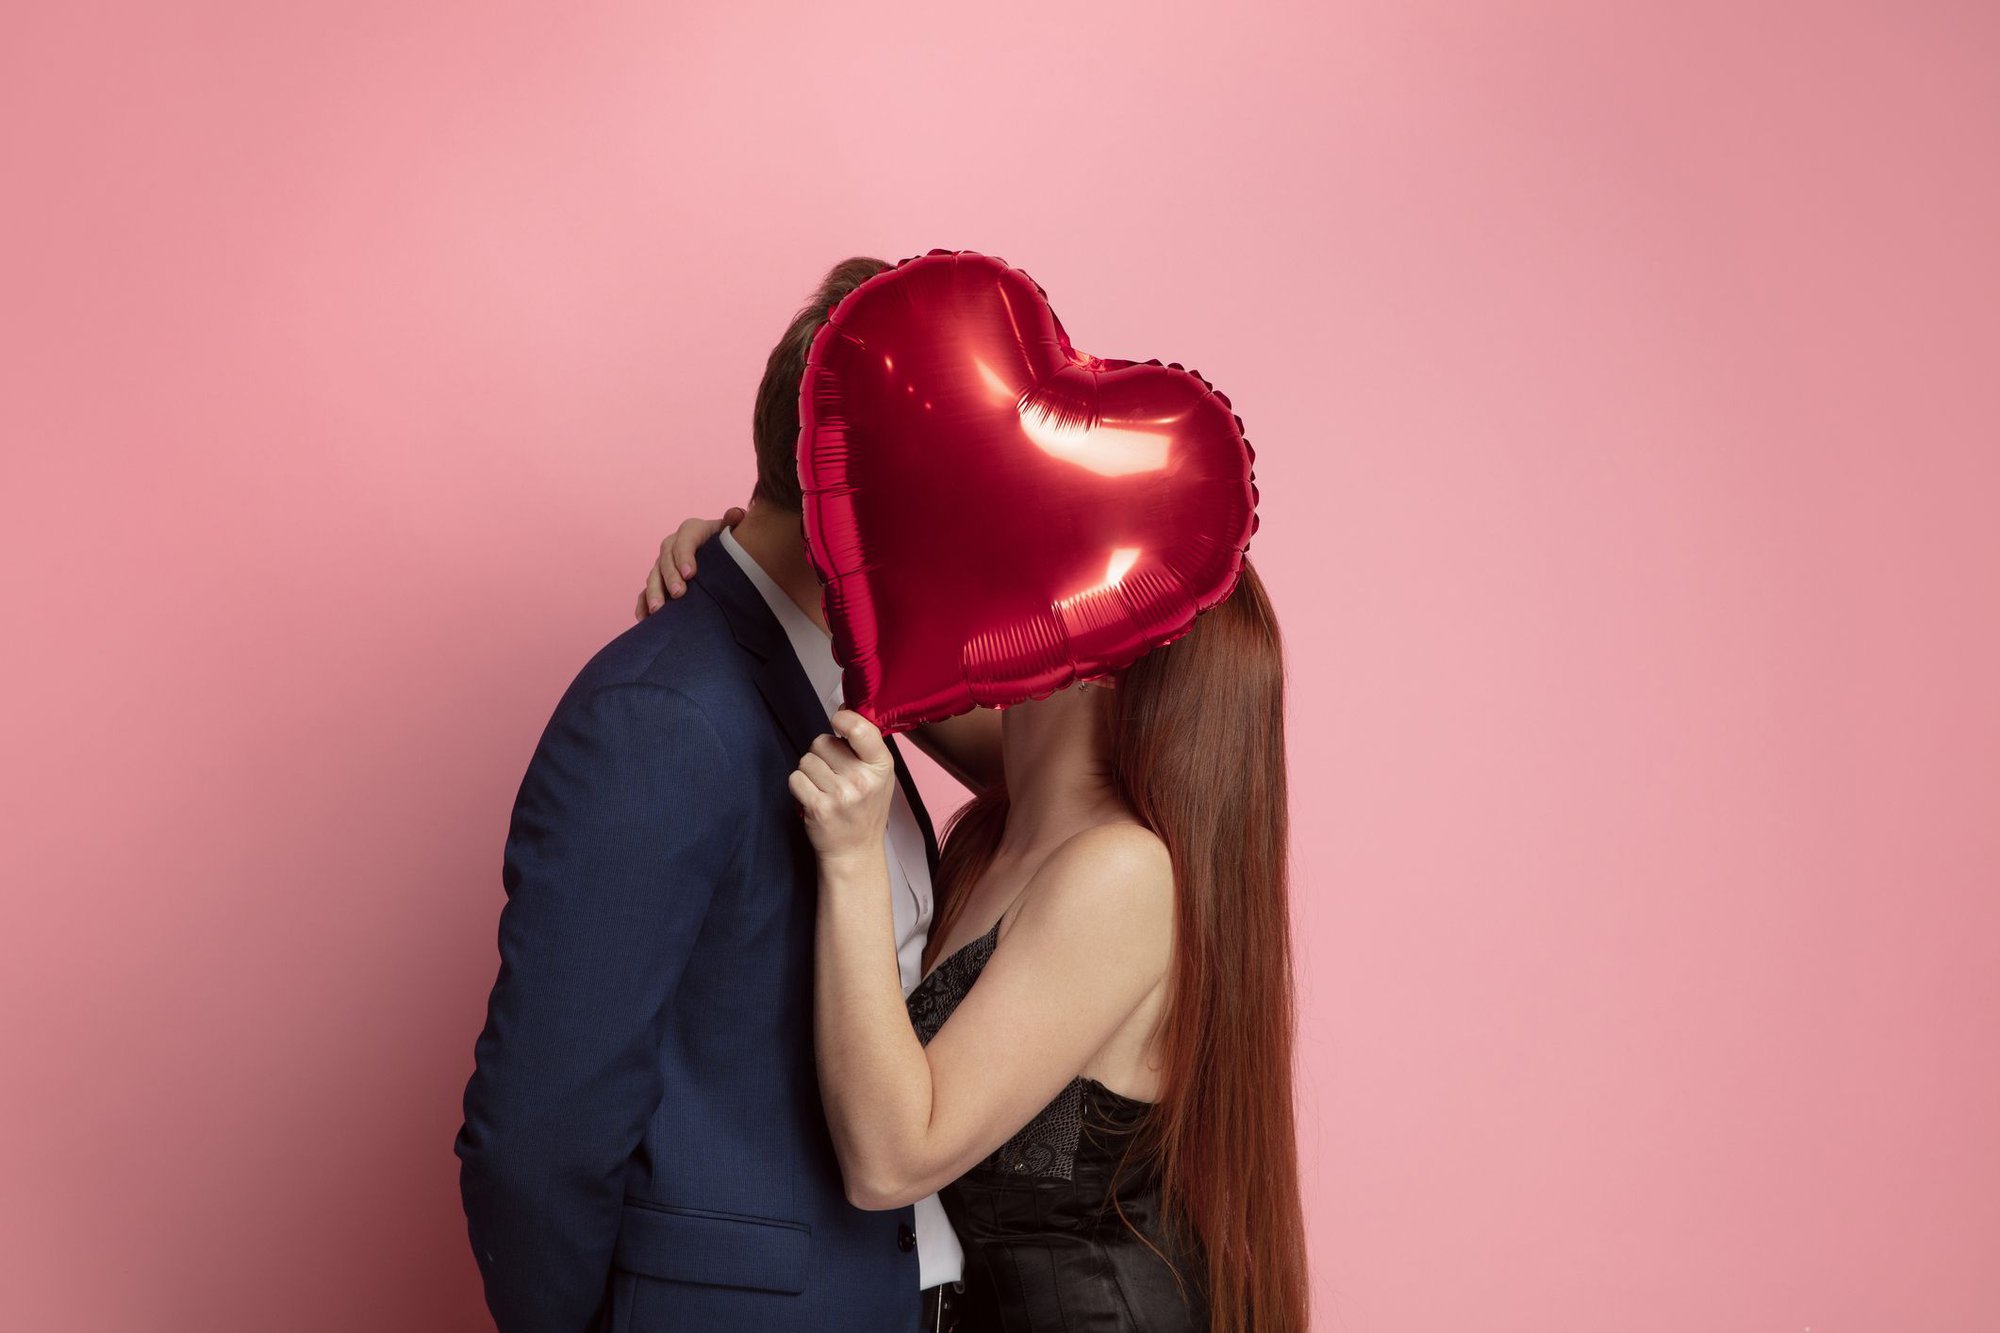 Nhờ ChatGPT lên lịch trình, gợi ý quà tặng ngày Valentine: Chỉ 100.000 đồng cũng có thể làm người yêu cảm động! - Ảnh 3.